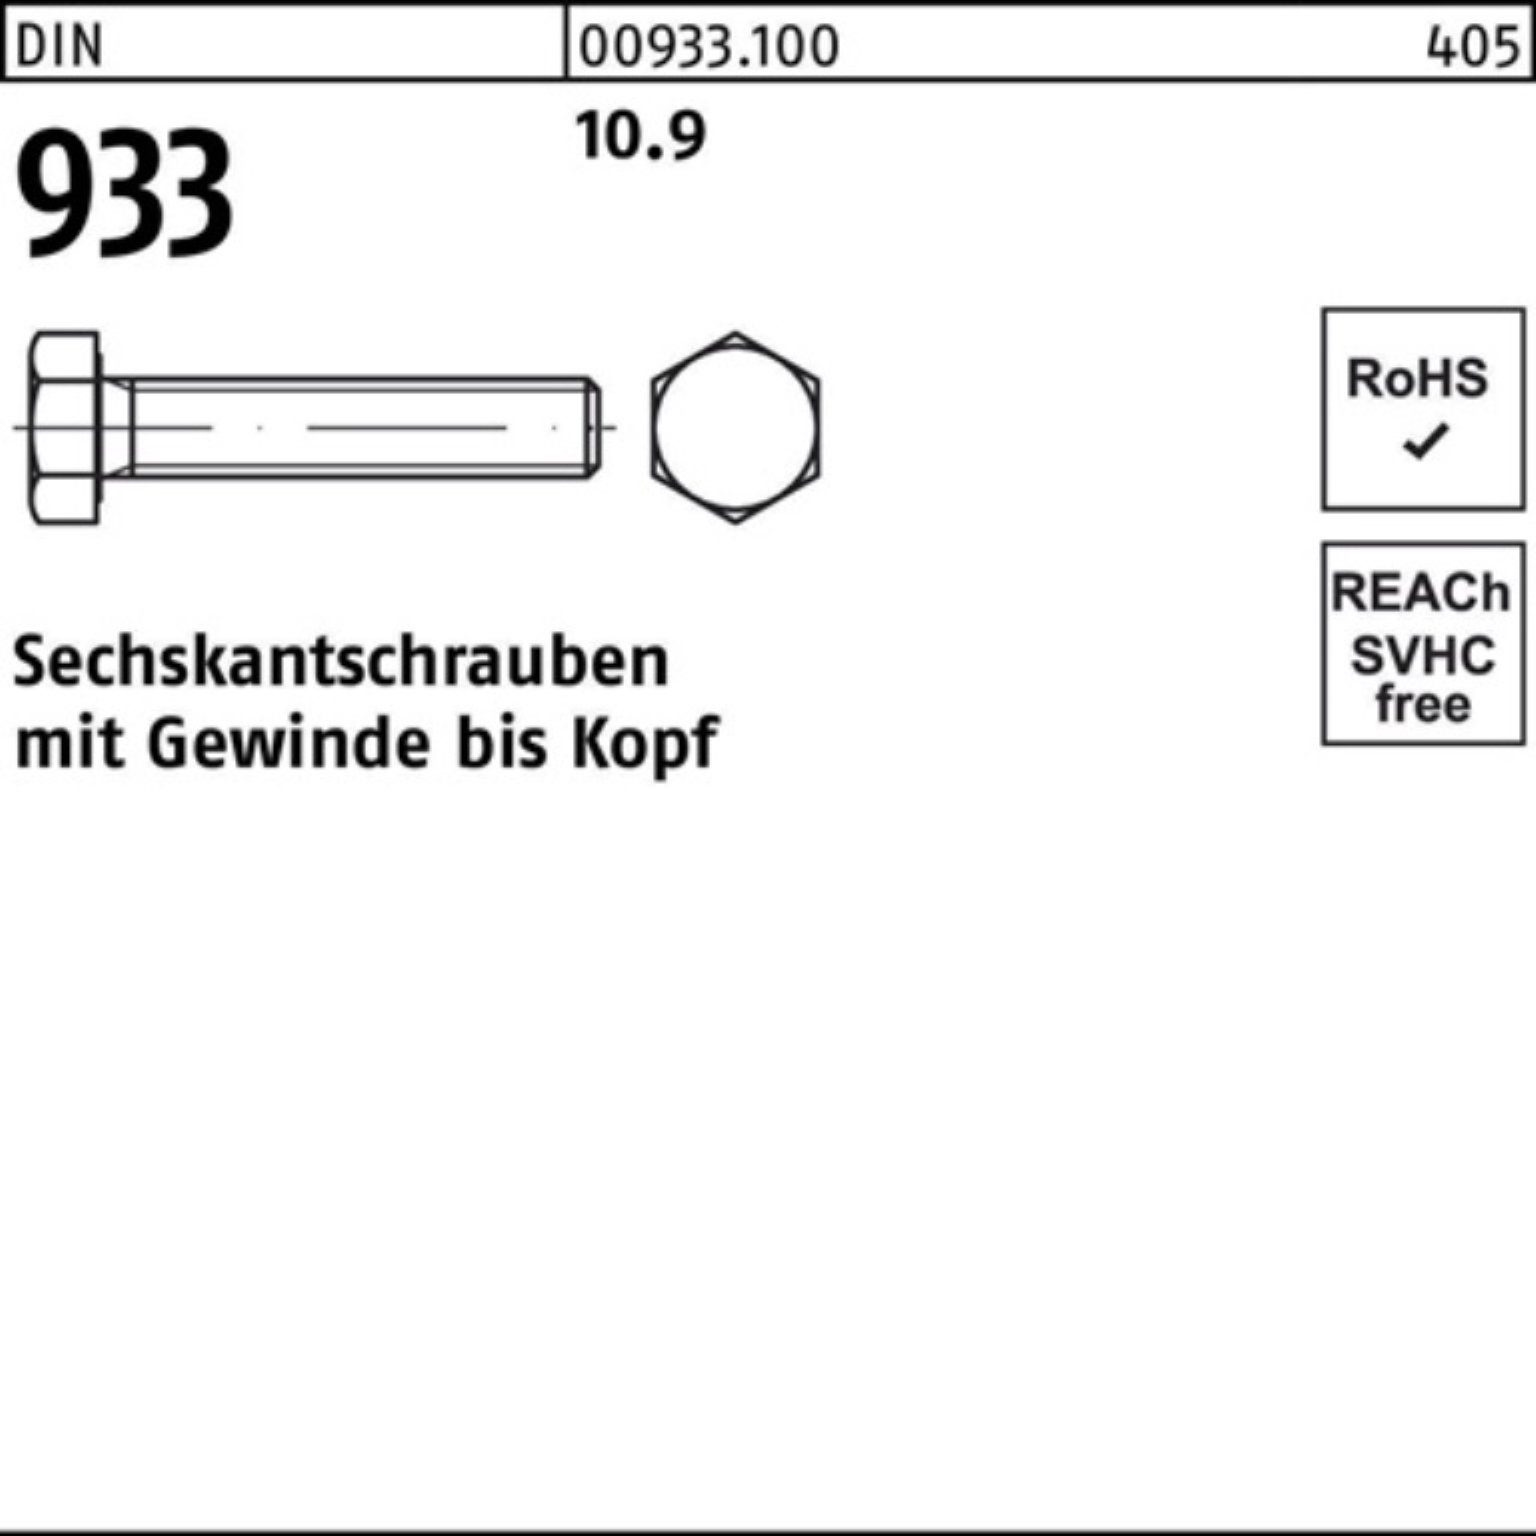 10.9 VG DIN Pack Reyher 130 Sechskantschraube DIN 1 Stück 933 100er Sechskantschraube M36x 933